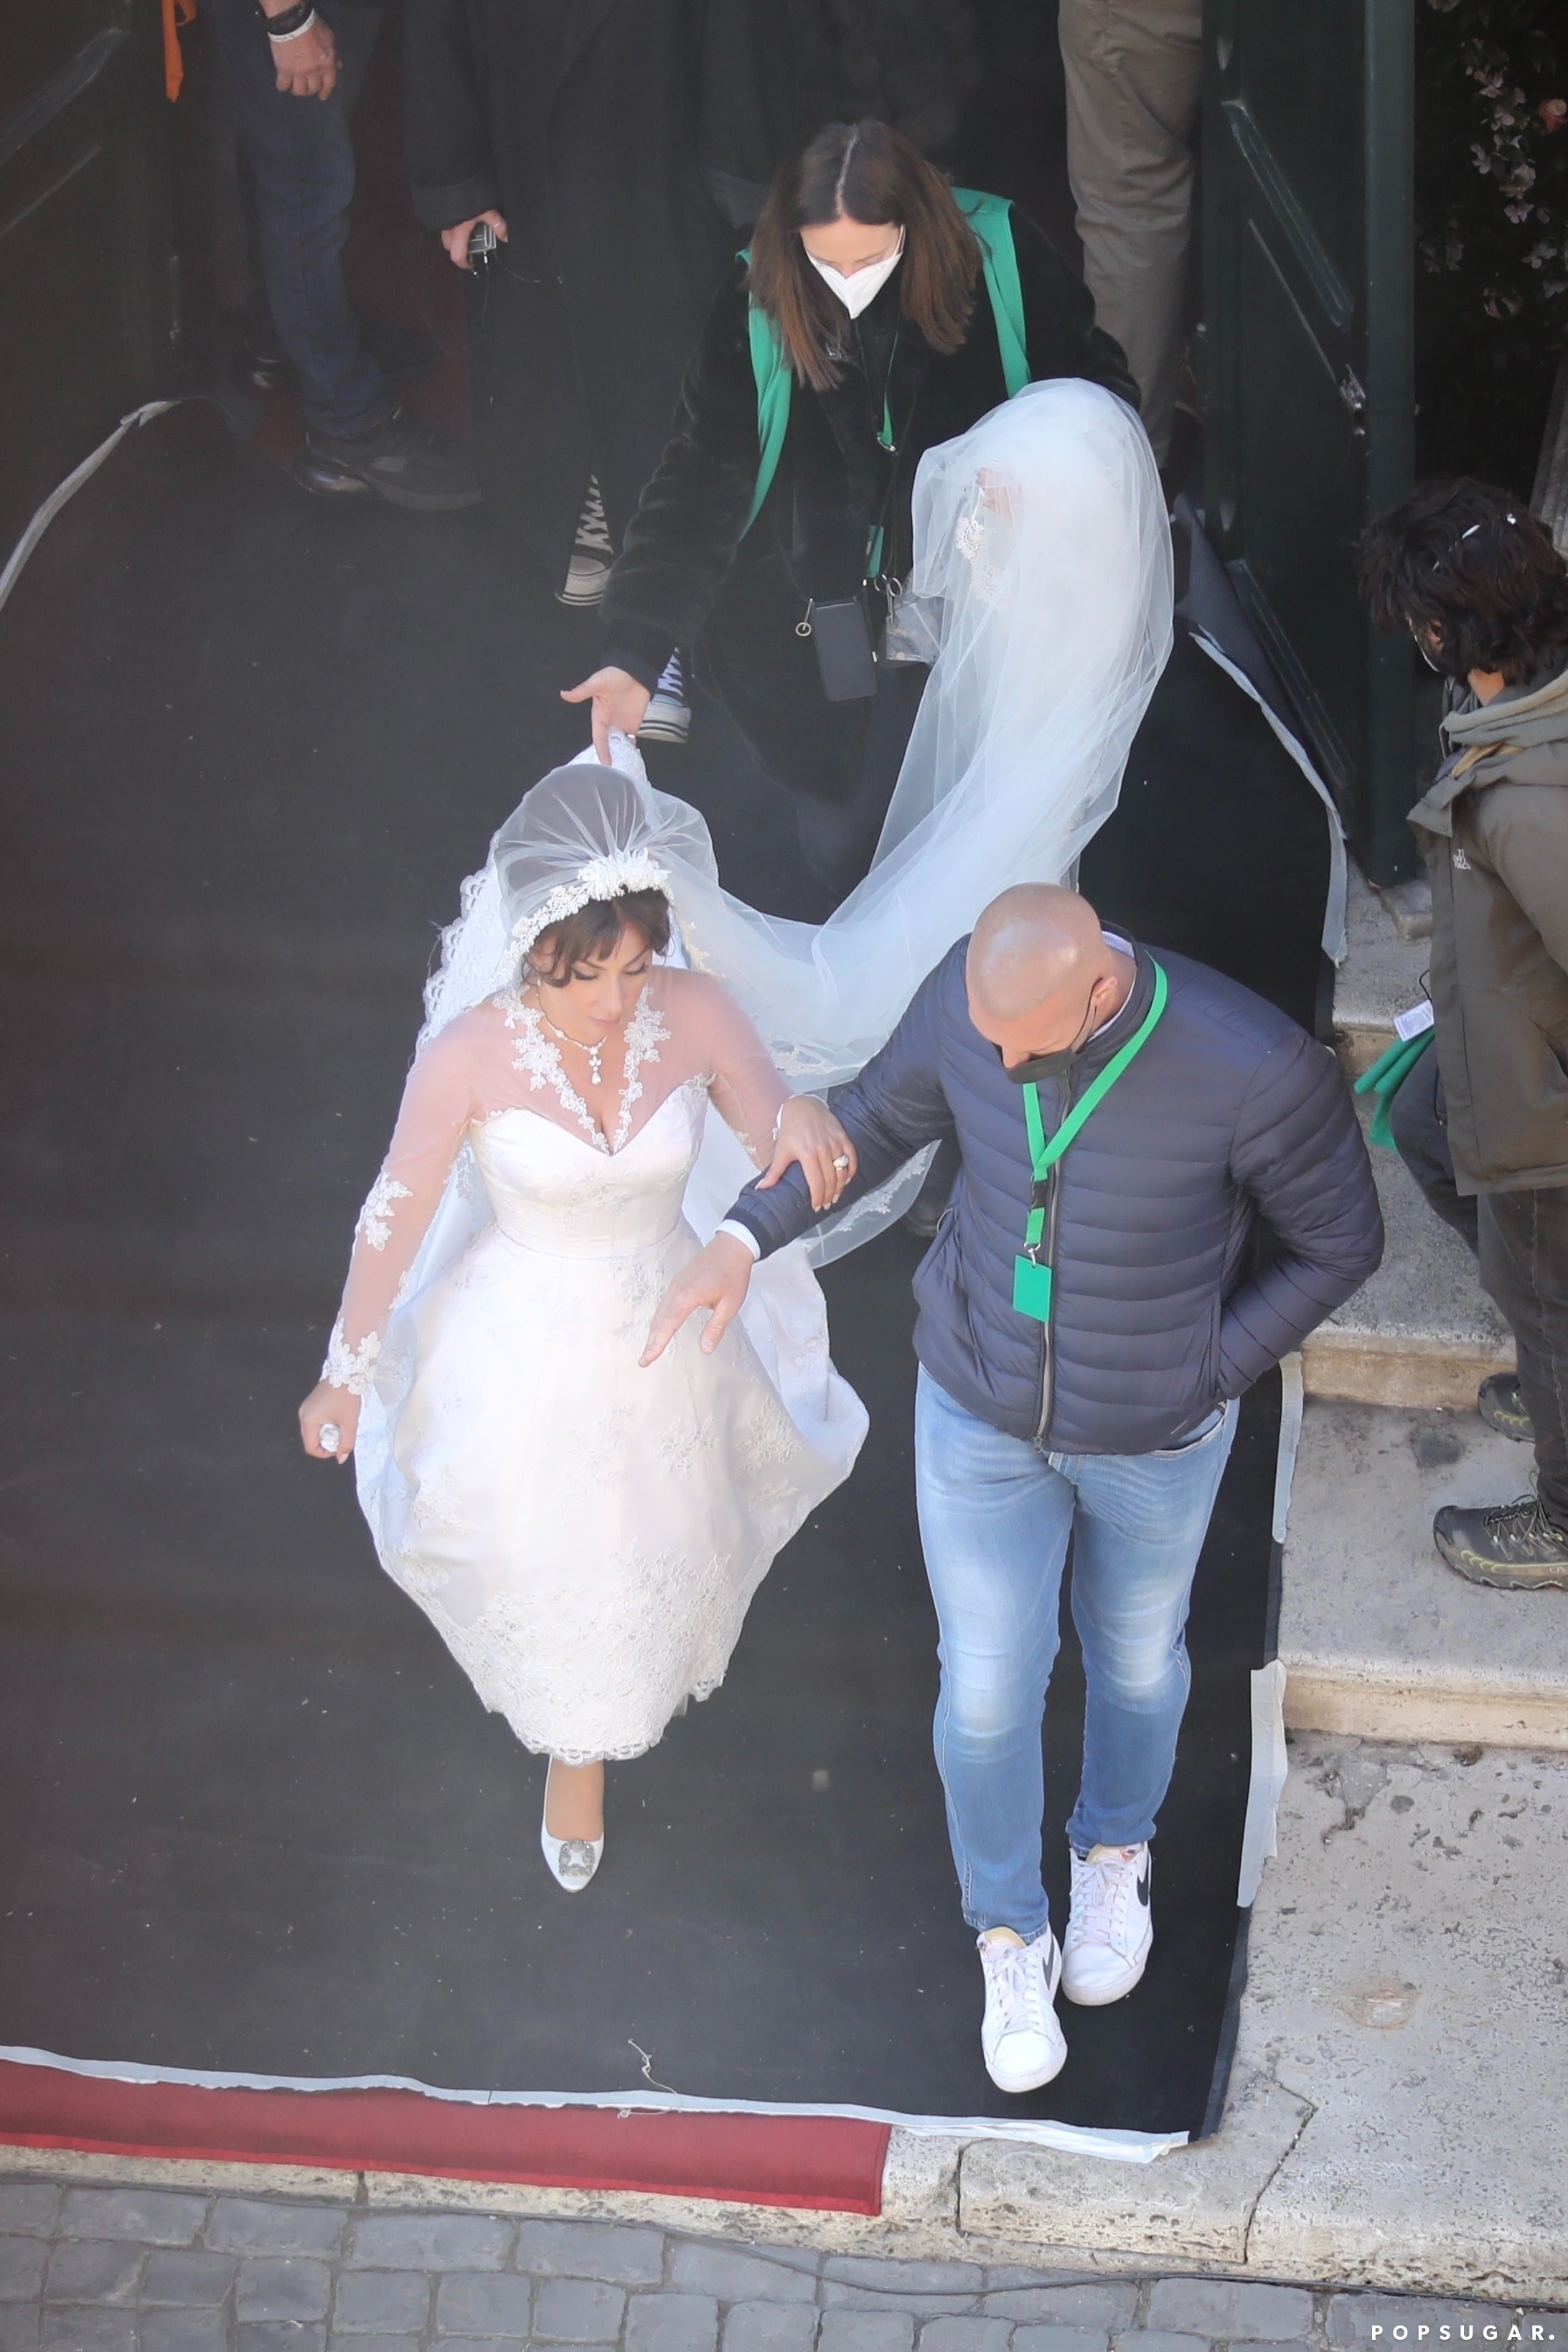 Lady Gaga wears wedding dress on 'House of Gucci' set